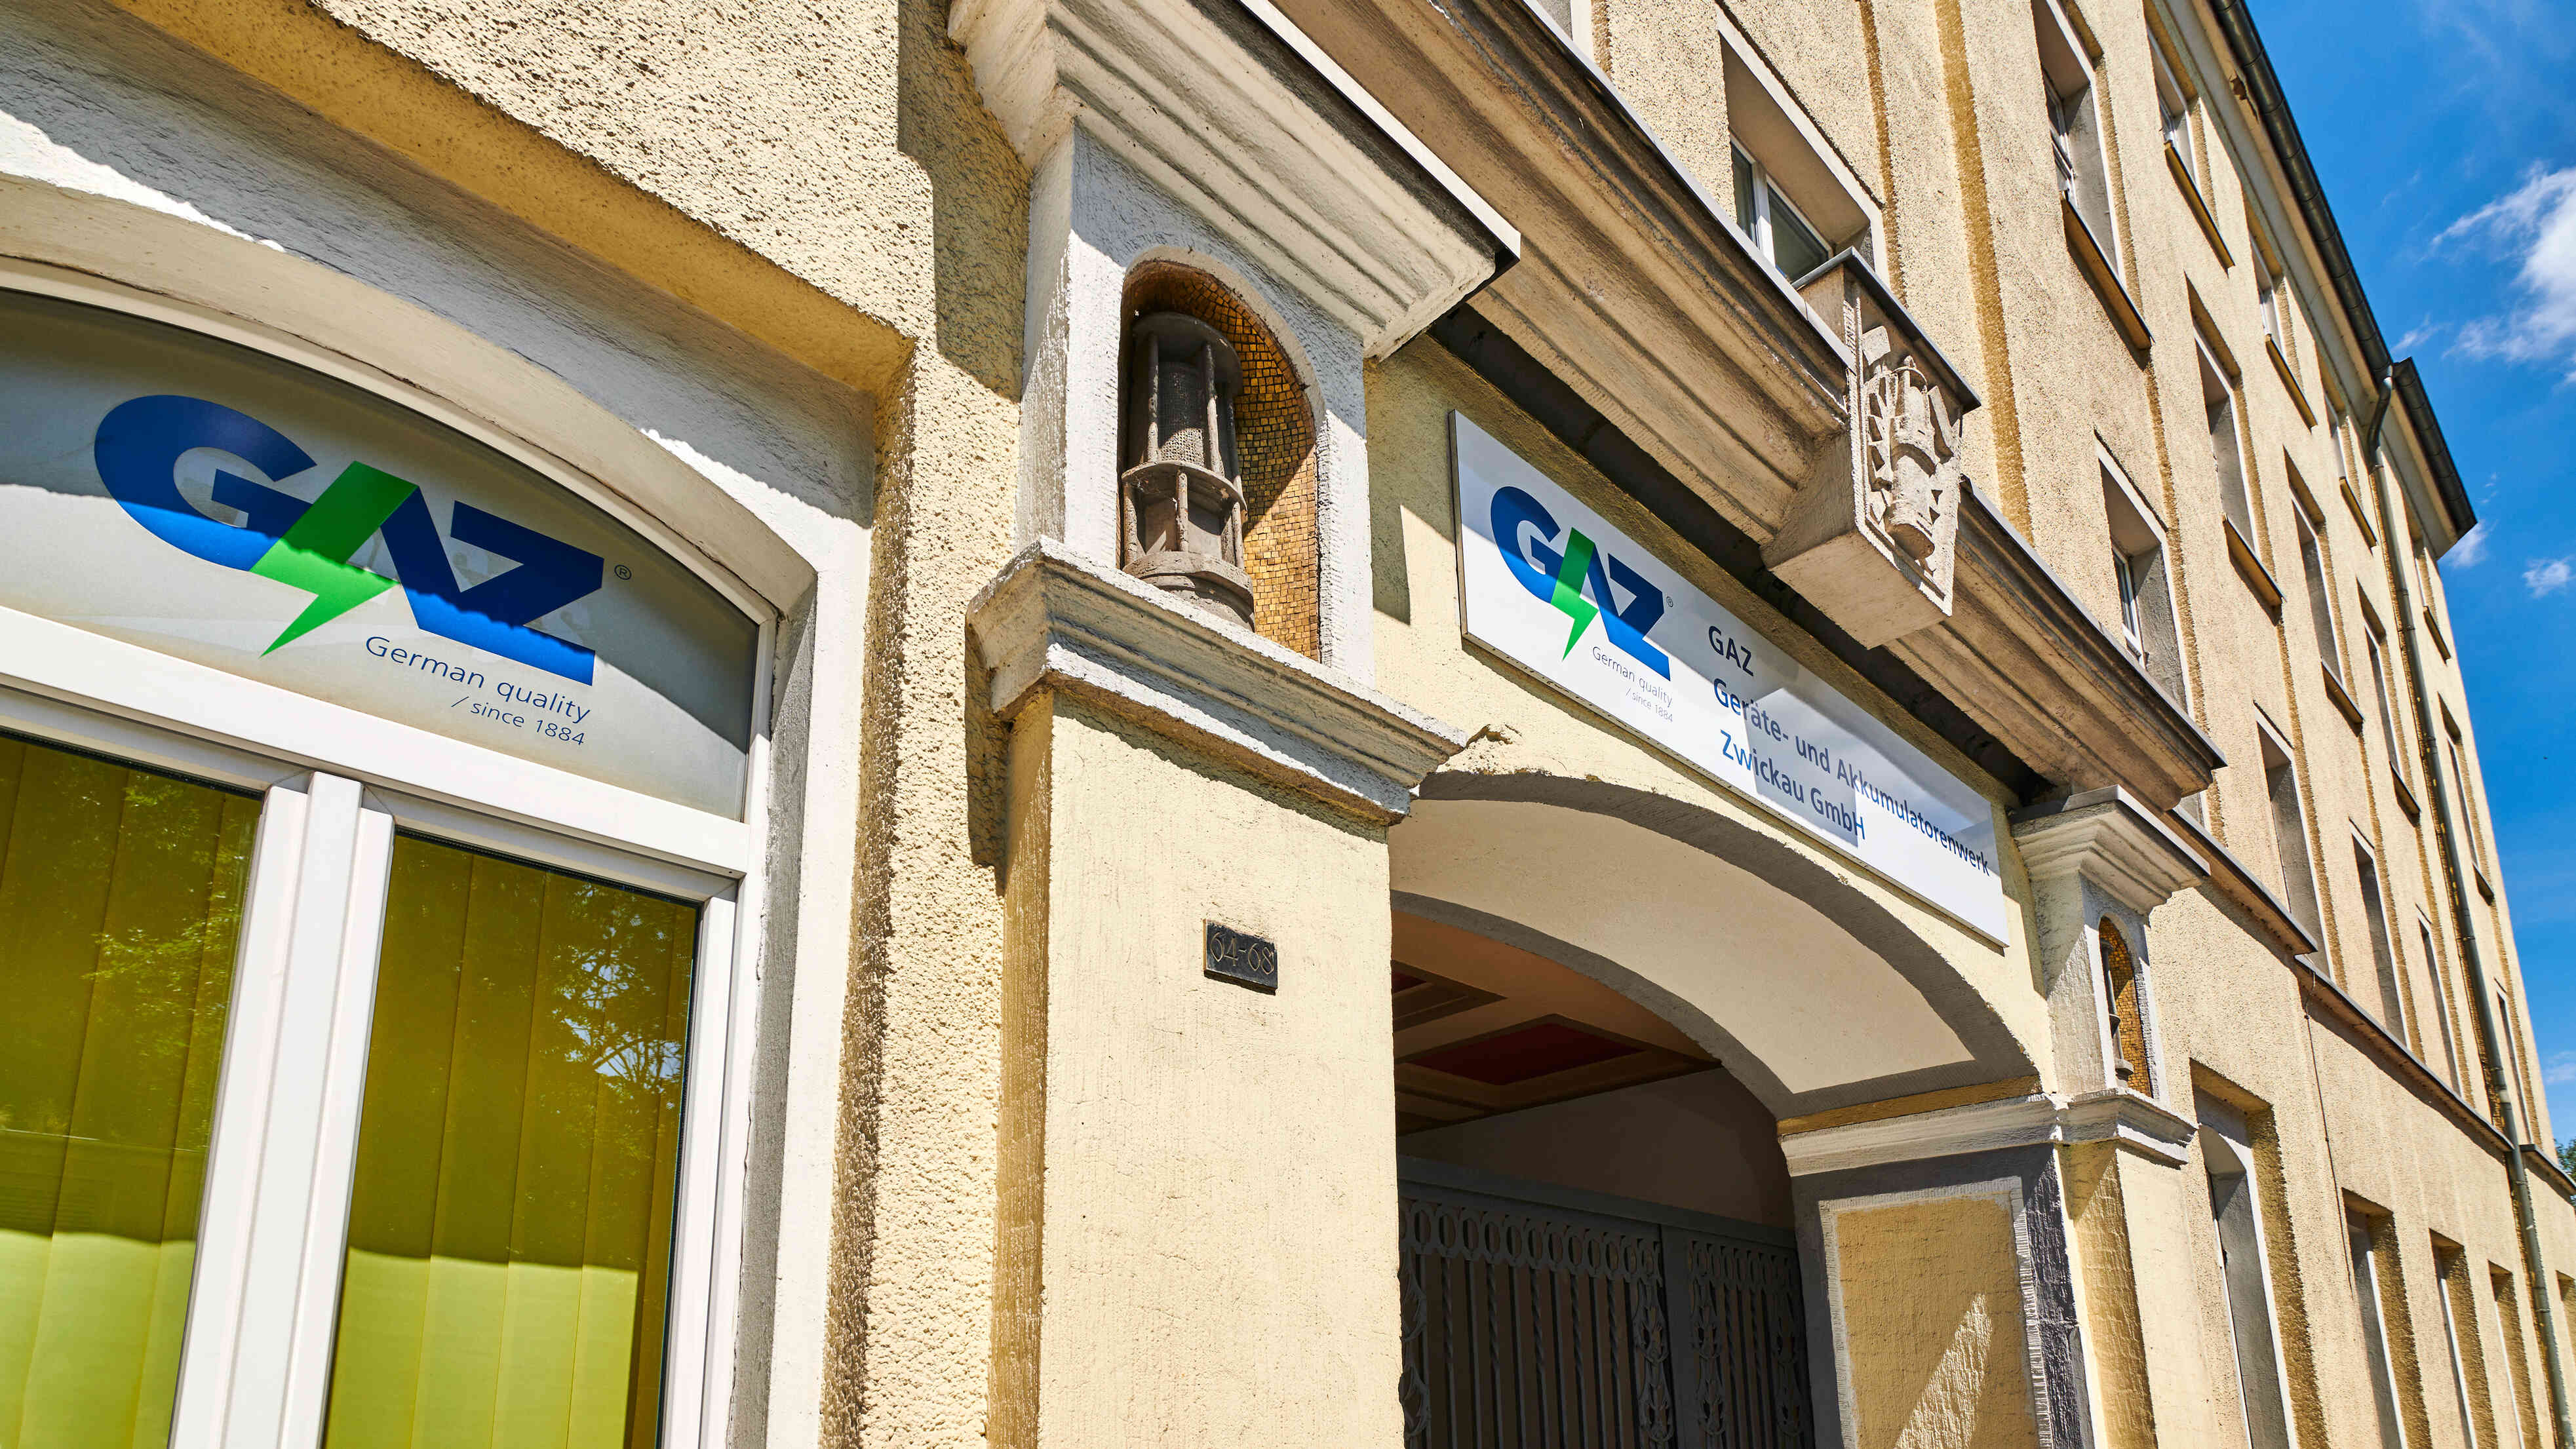 شركة تقليدية مقرها في تسفيكاو بألمانيا تحتفل بالذكرى السنوية الـ 140 لتأسيسها من خلال دخول سوق أعمال جديد